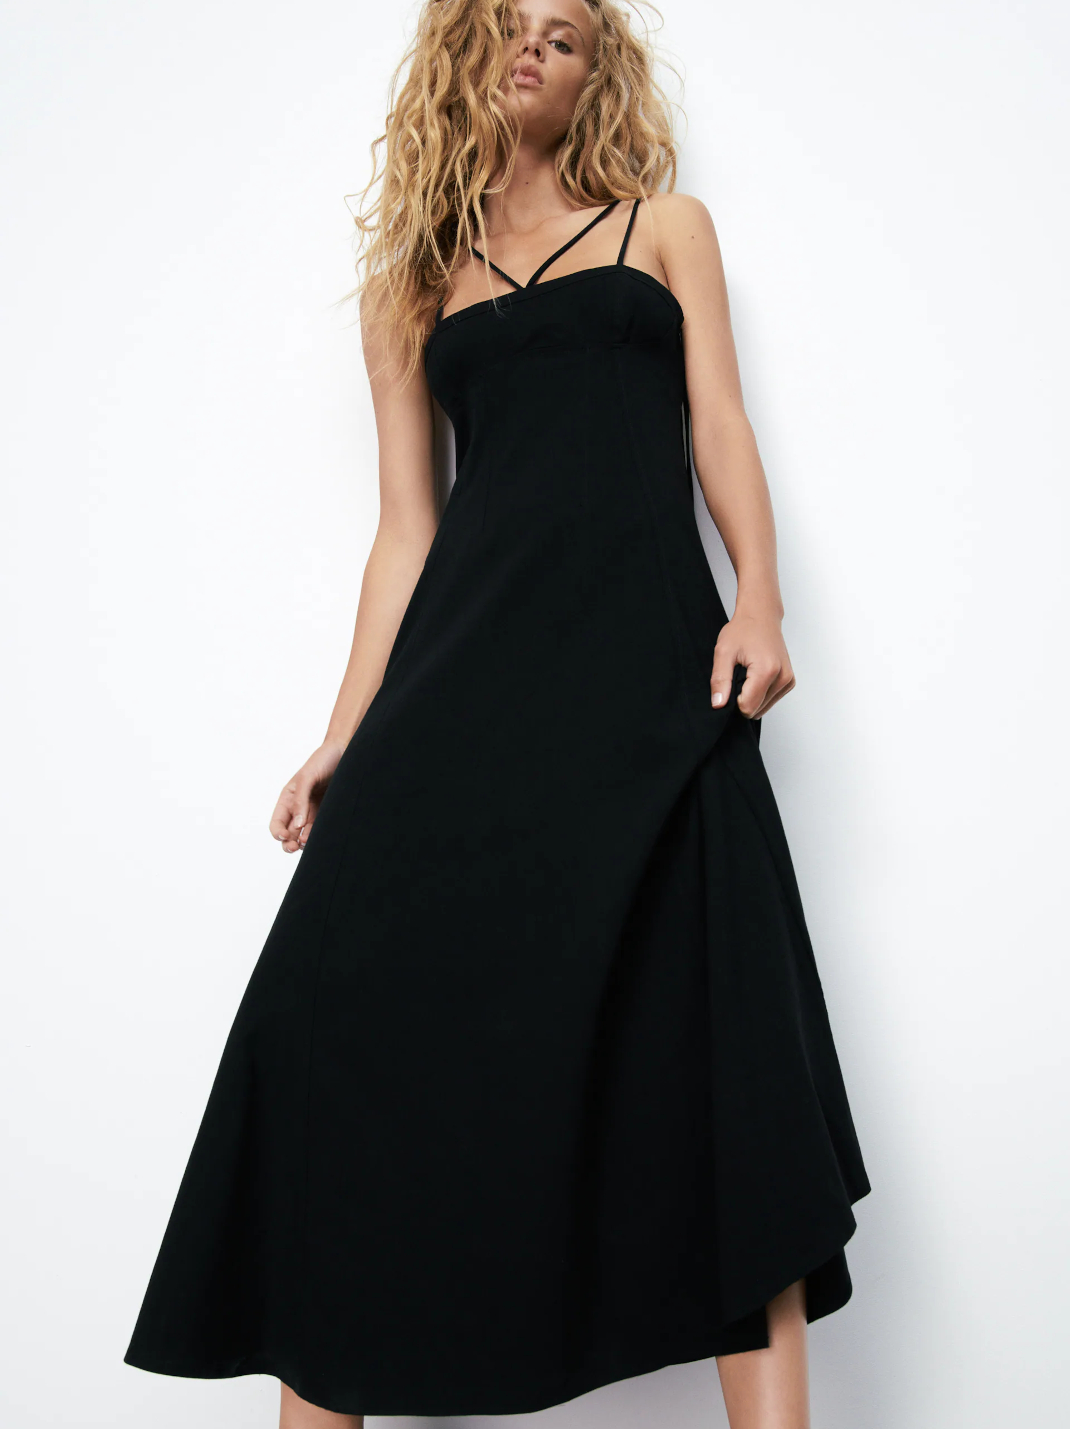 γυναίκα με μαύρο φόρεμα